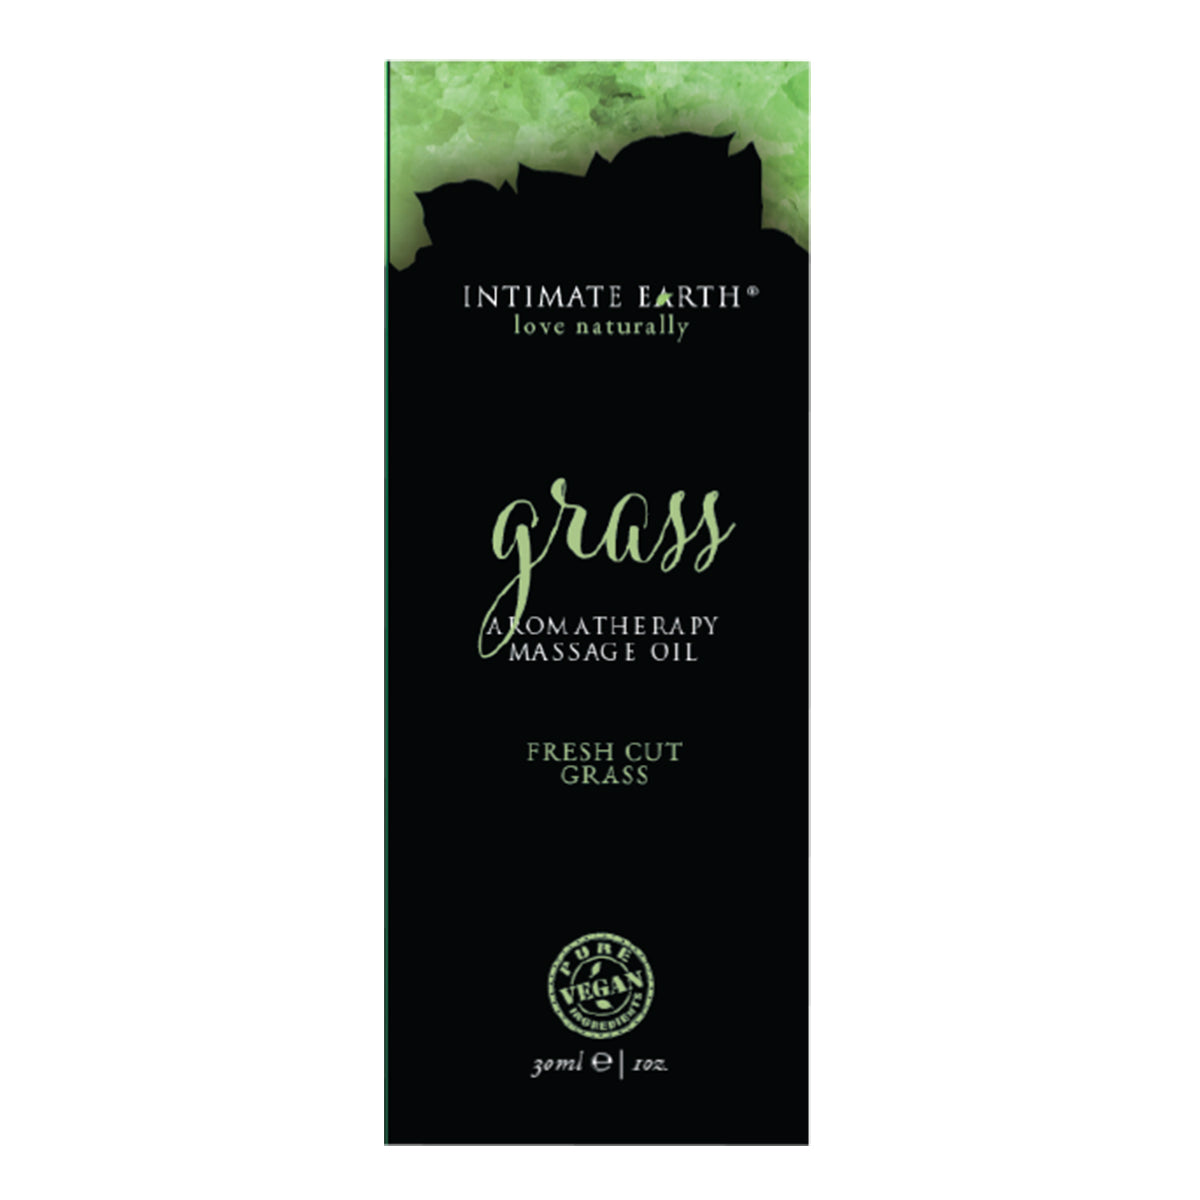 Intimate Earth Massage Oil - 1oz Grass